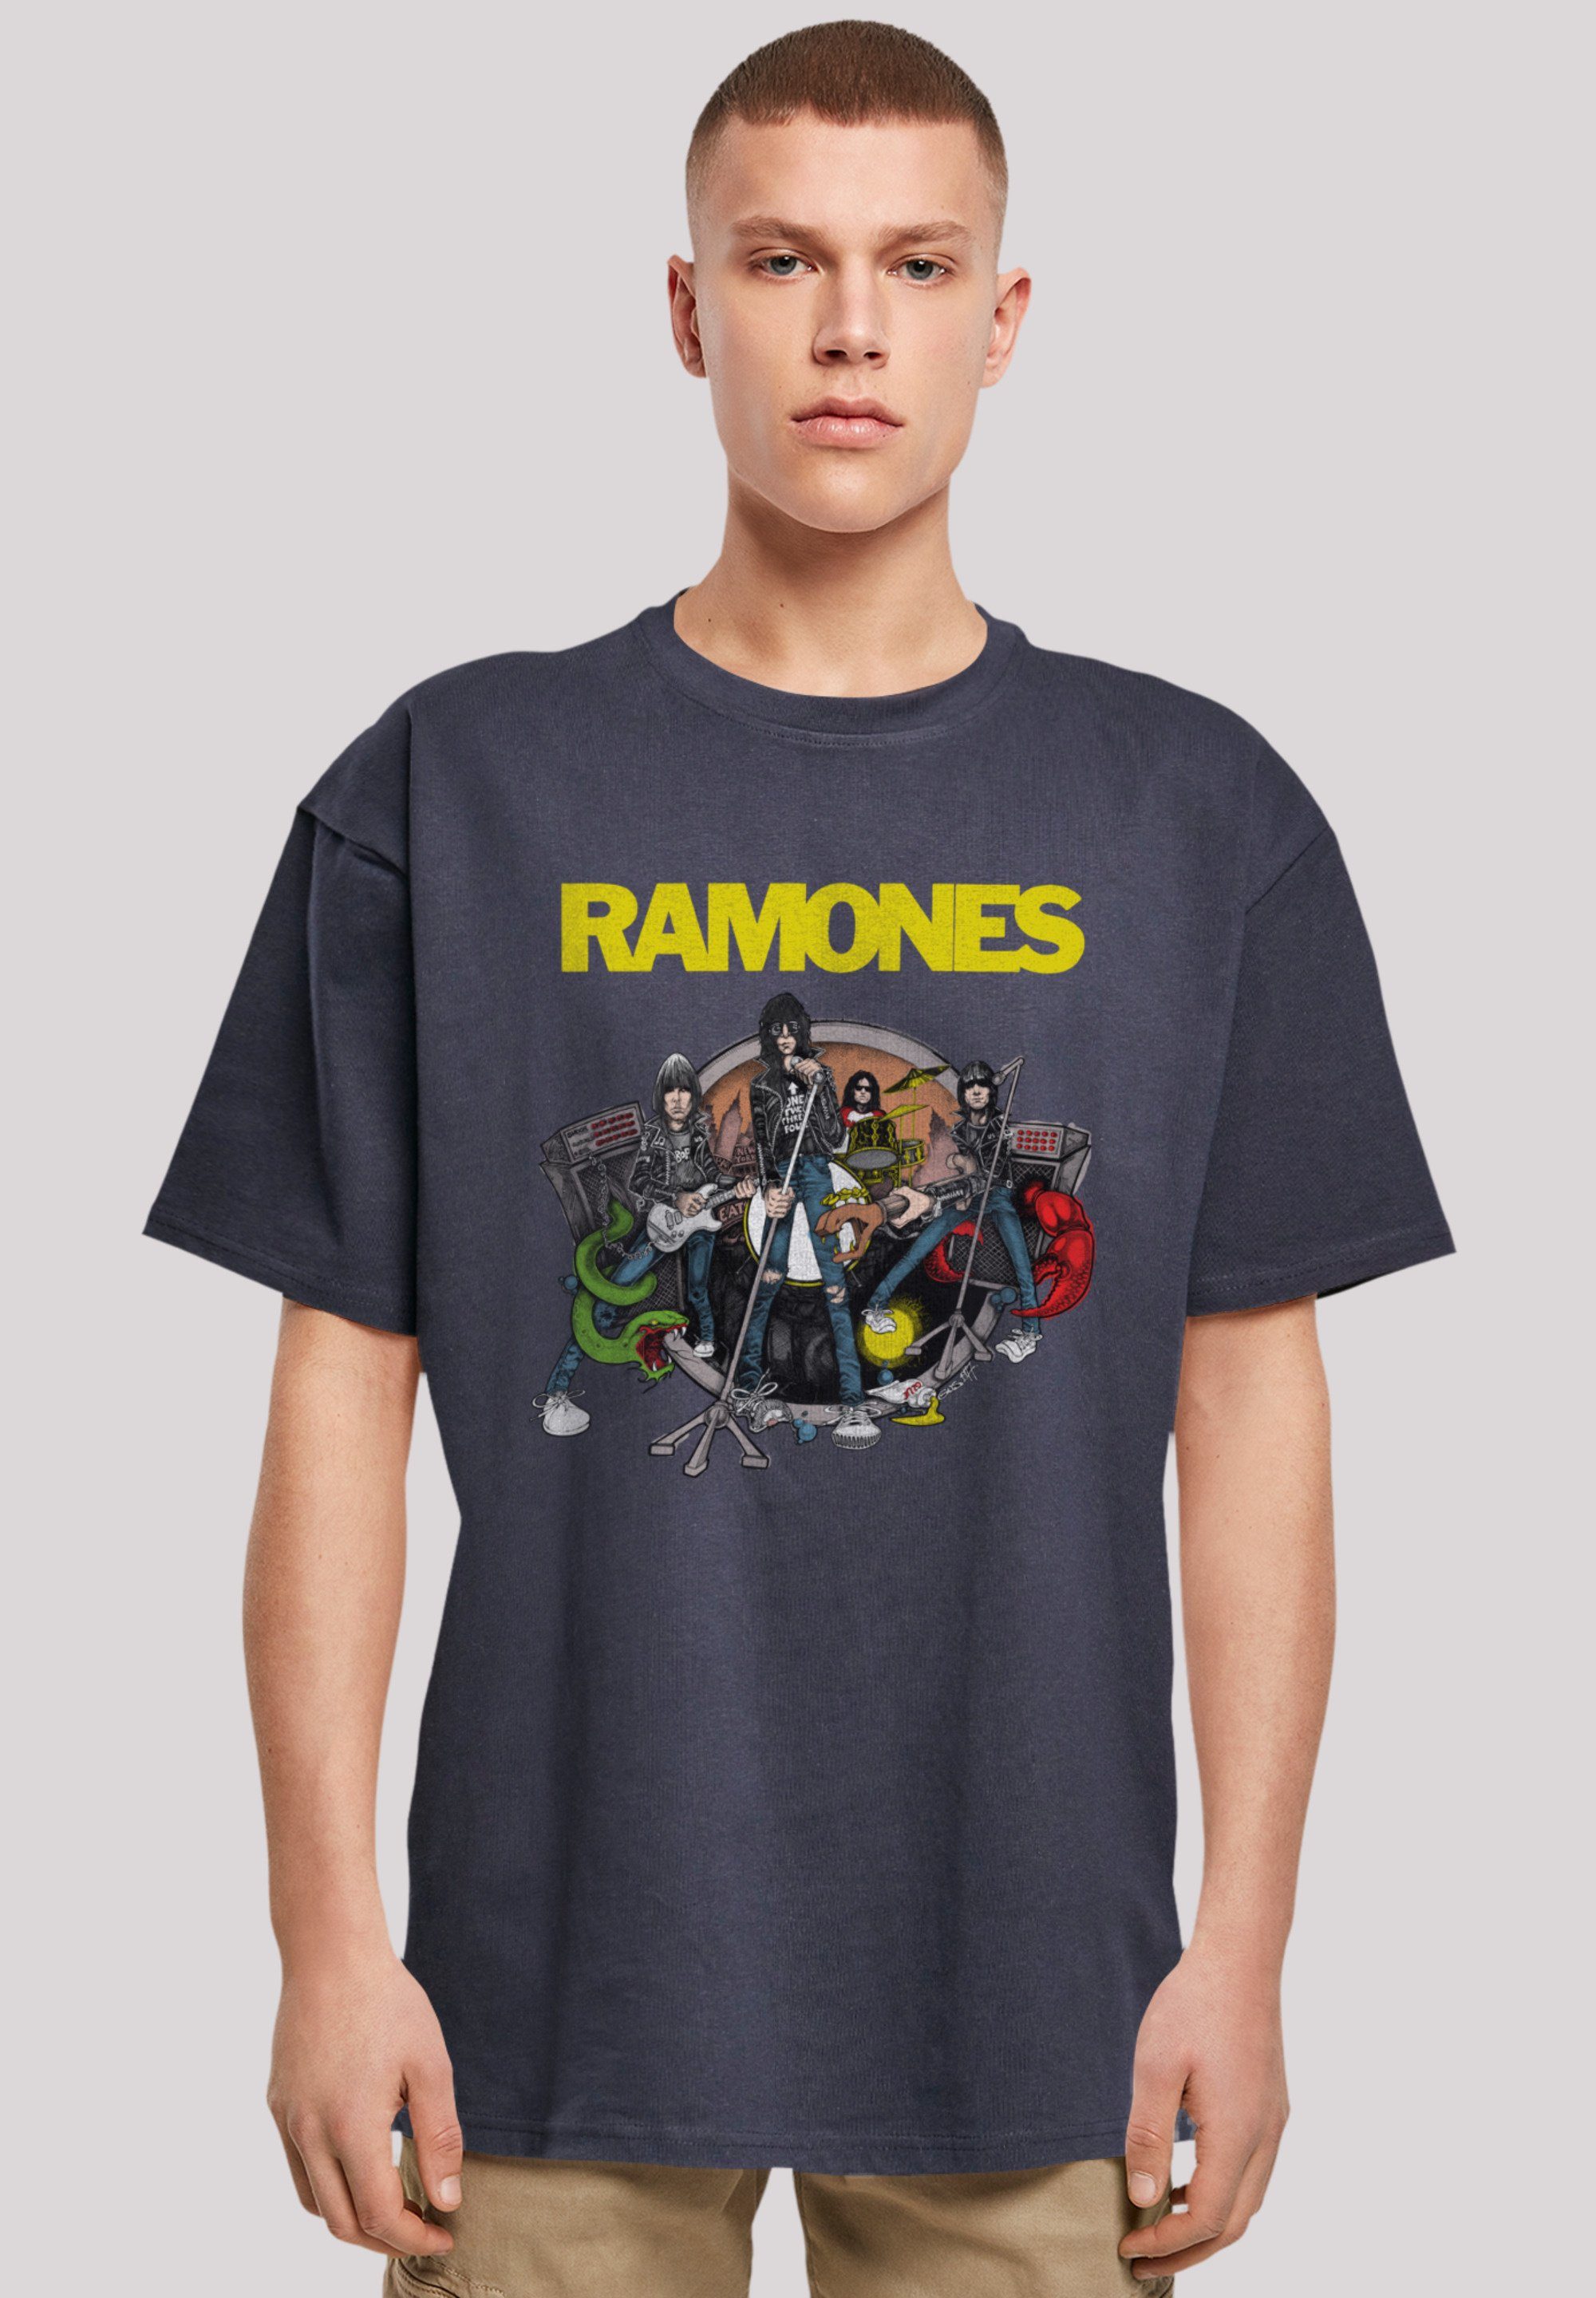 Band, Ruin Ramones Passform Weite Road Rock-Musik, To überschnittene Premium Qualität, und T-Shirt F4NT4STIC Schultern Rock Musik Band